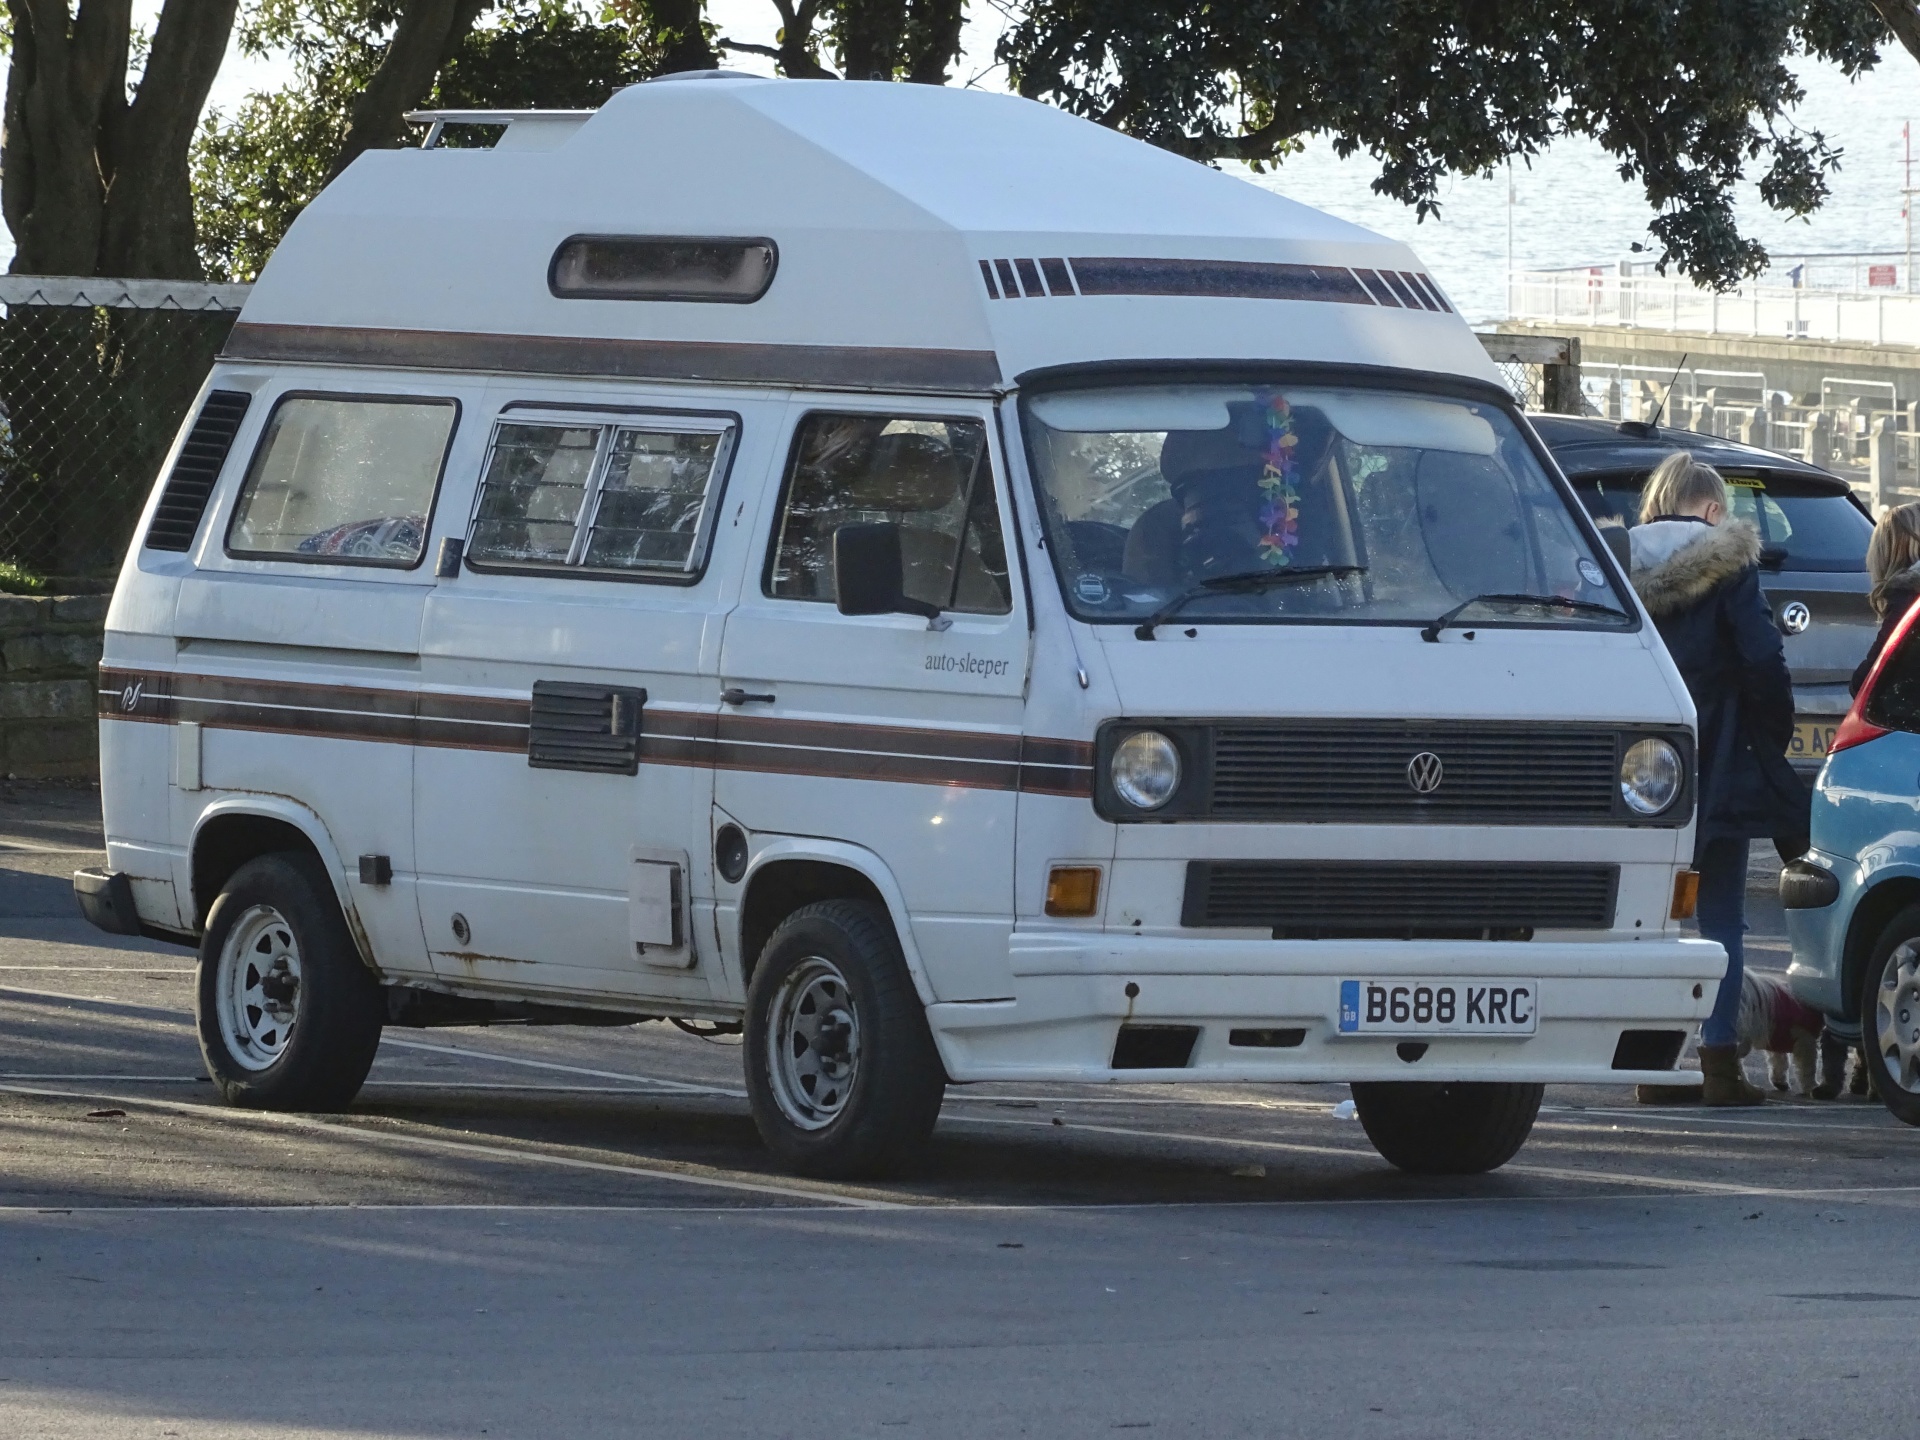 Volkswagen Campervan